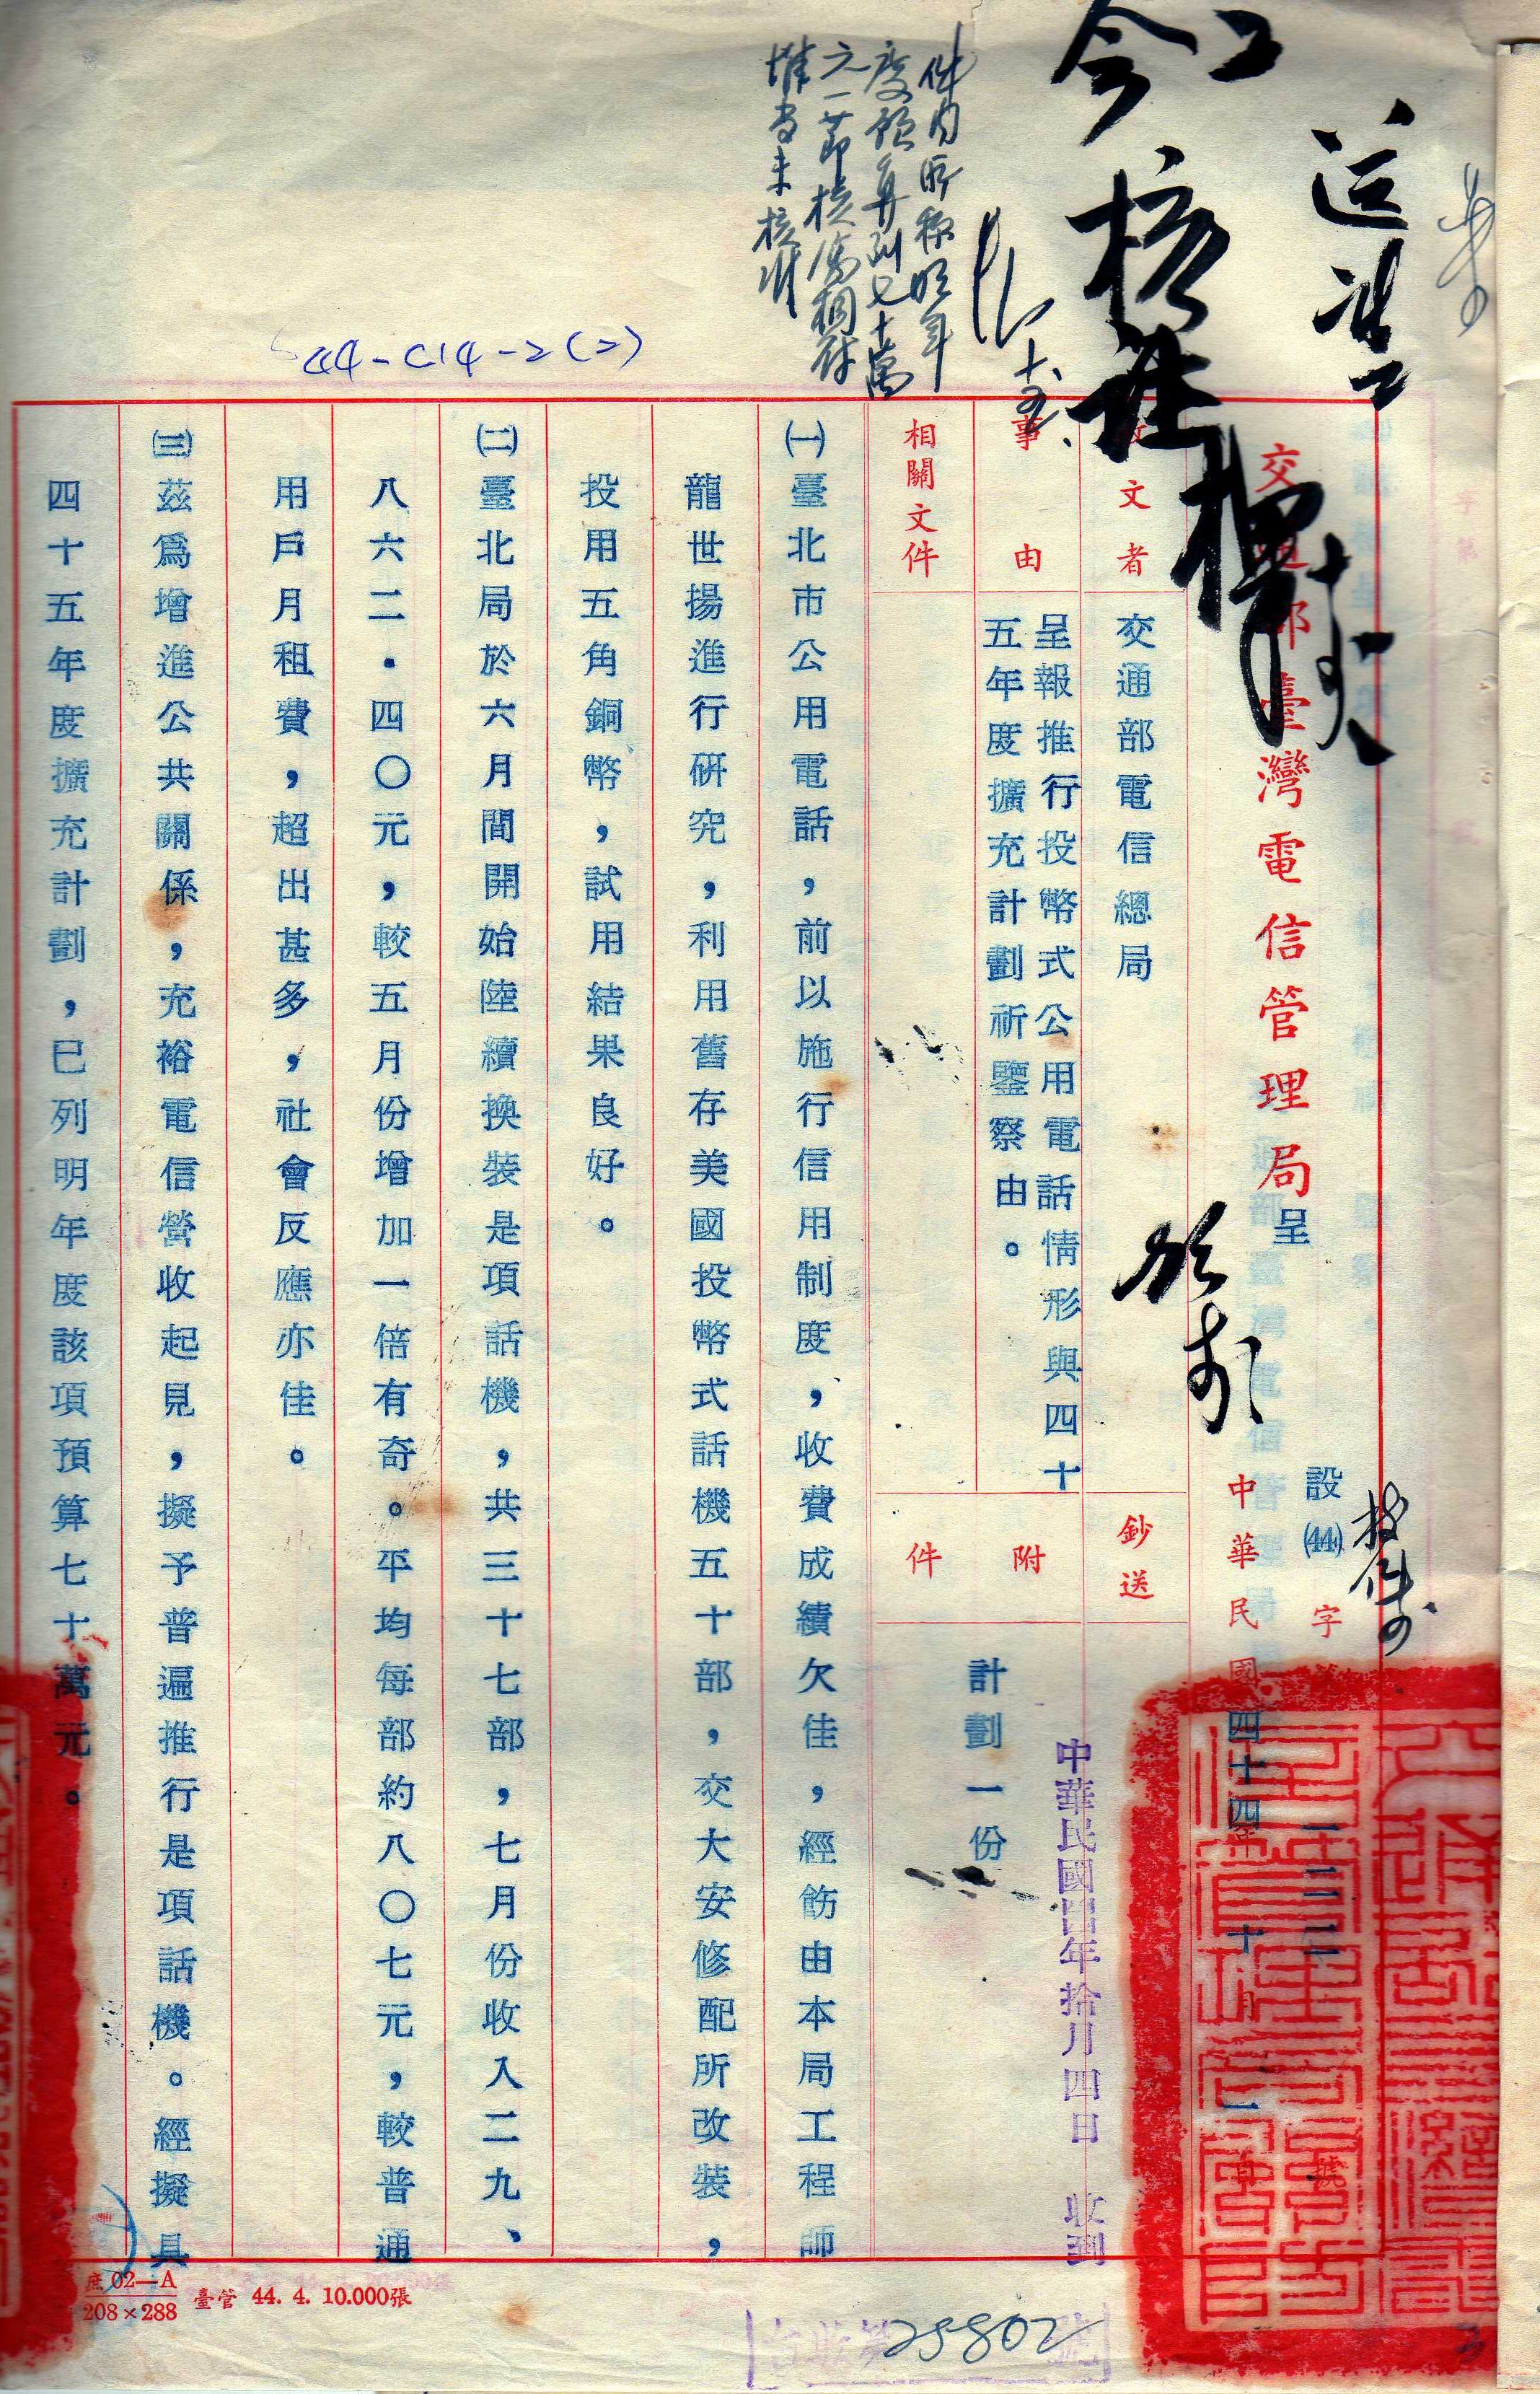 中華電信45年公用電話擴充計畫公文第3頁